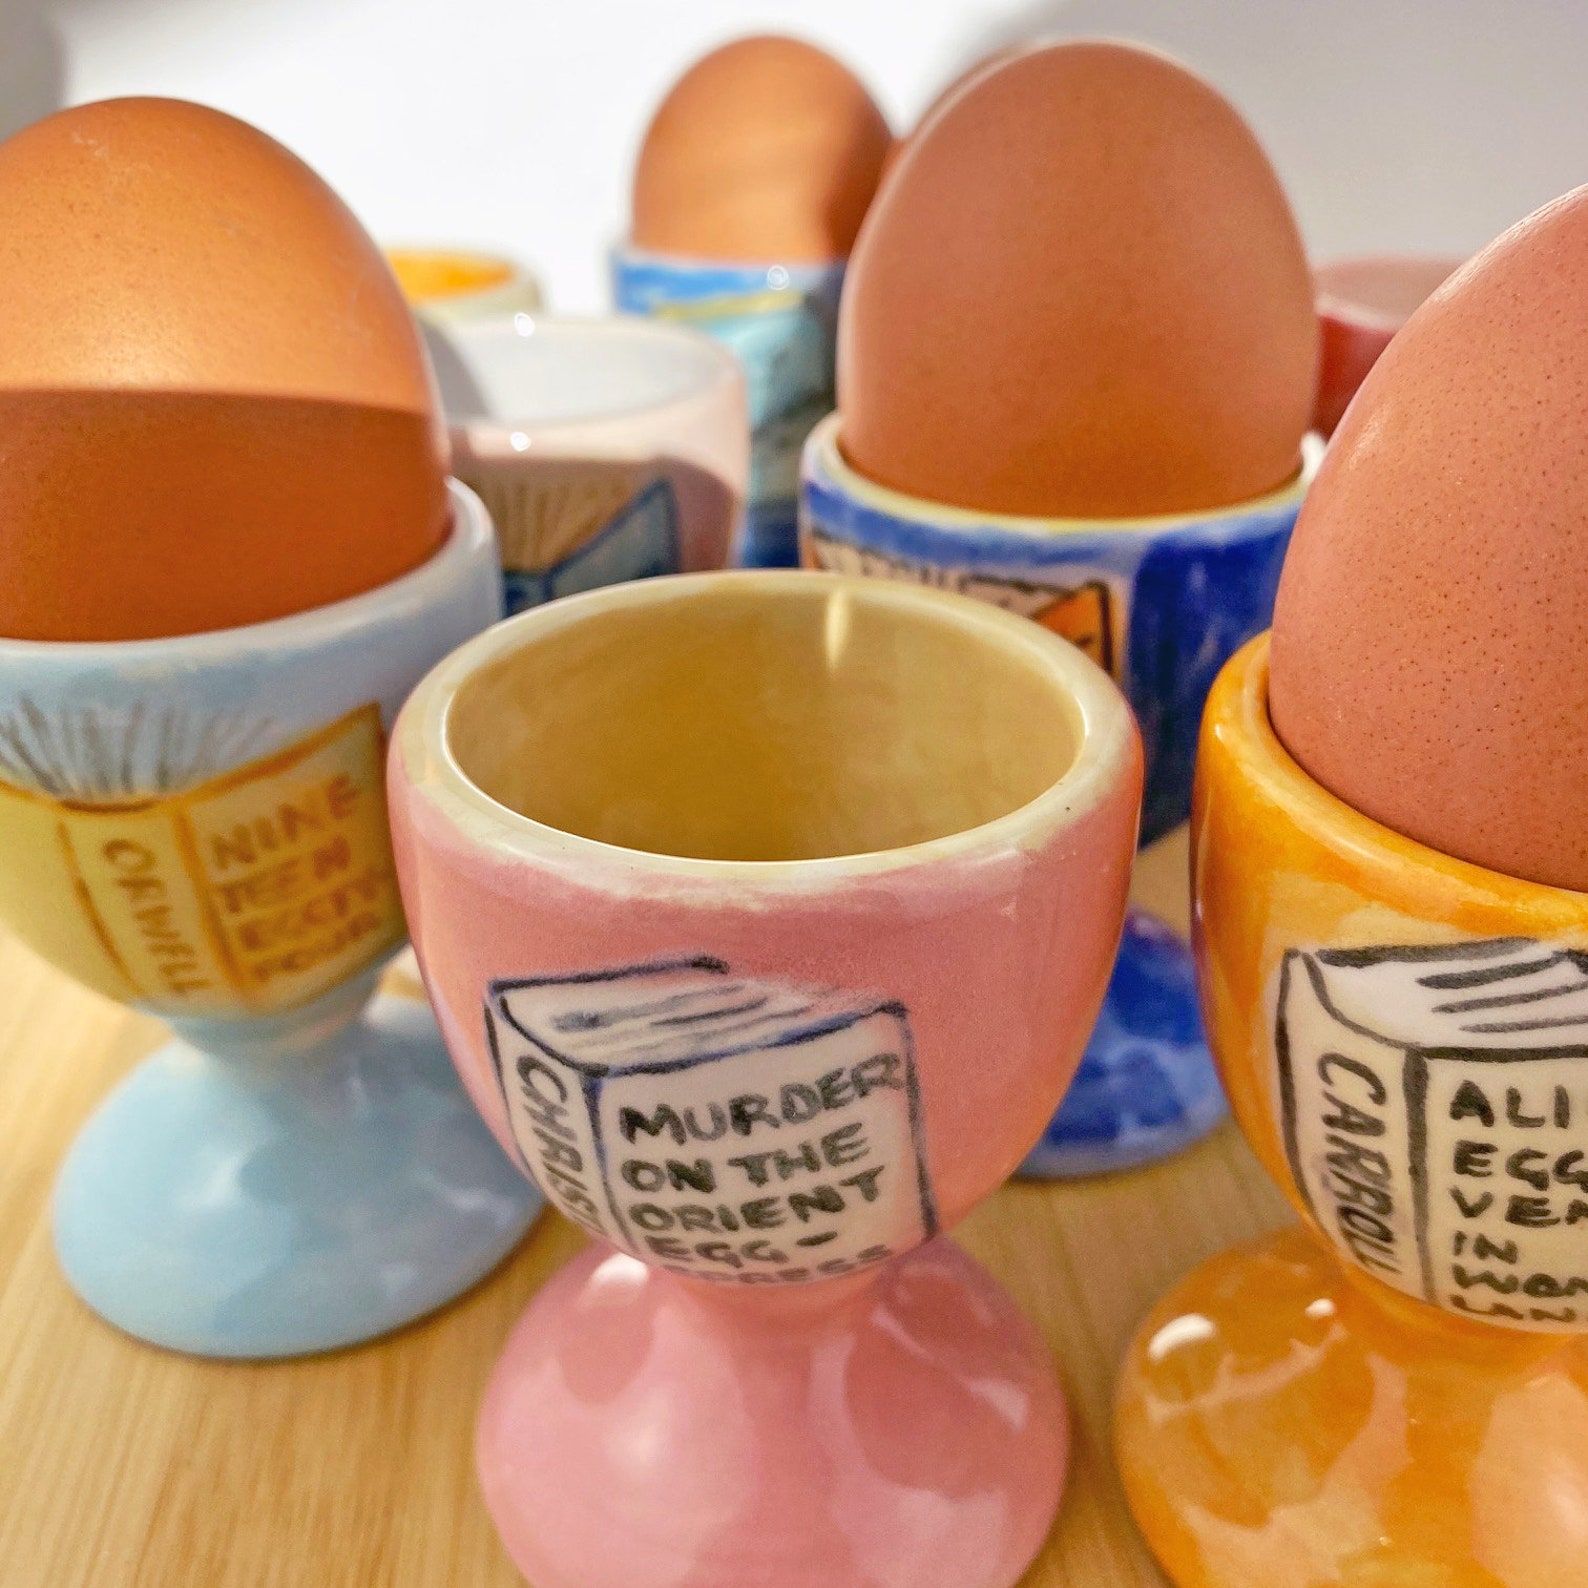 Une photo d'un groupe d'œufs peints avec des jeux de mots sur les titres de livres liés aux œufs.  Les coquetiers sont de différentes couleurs et peints à la main.